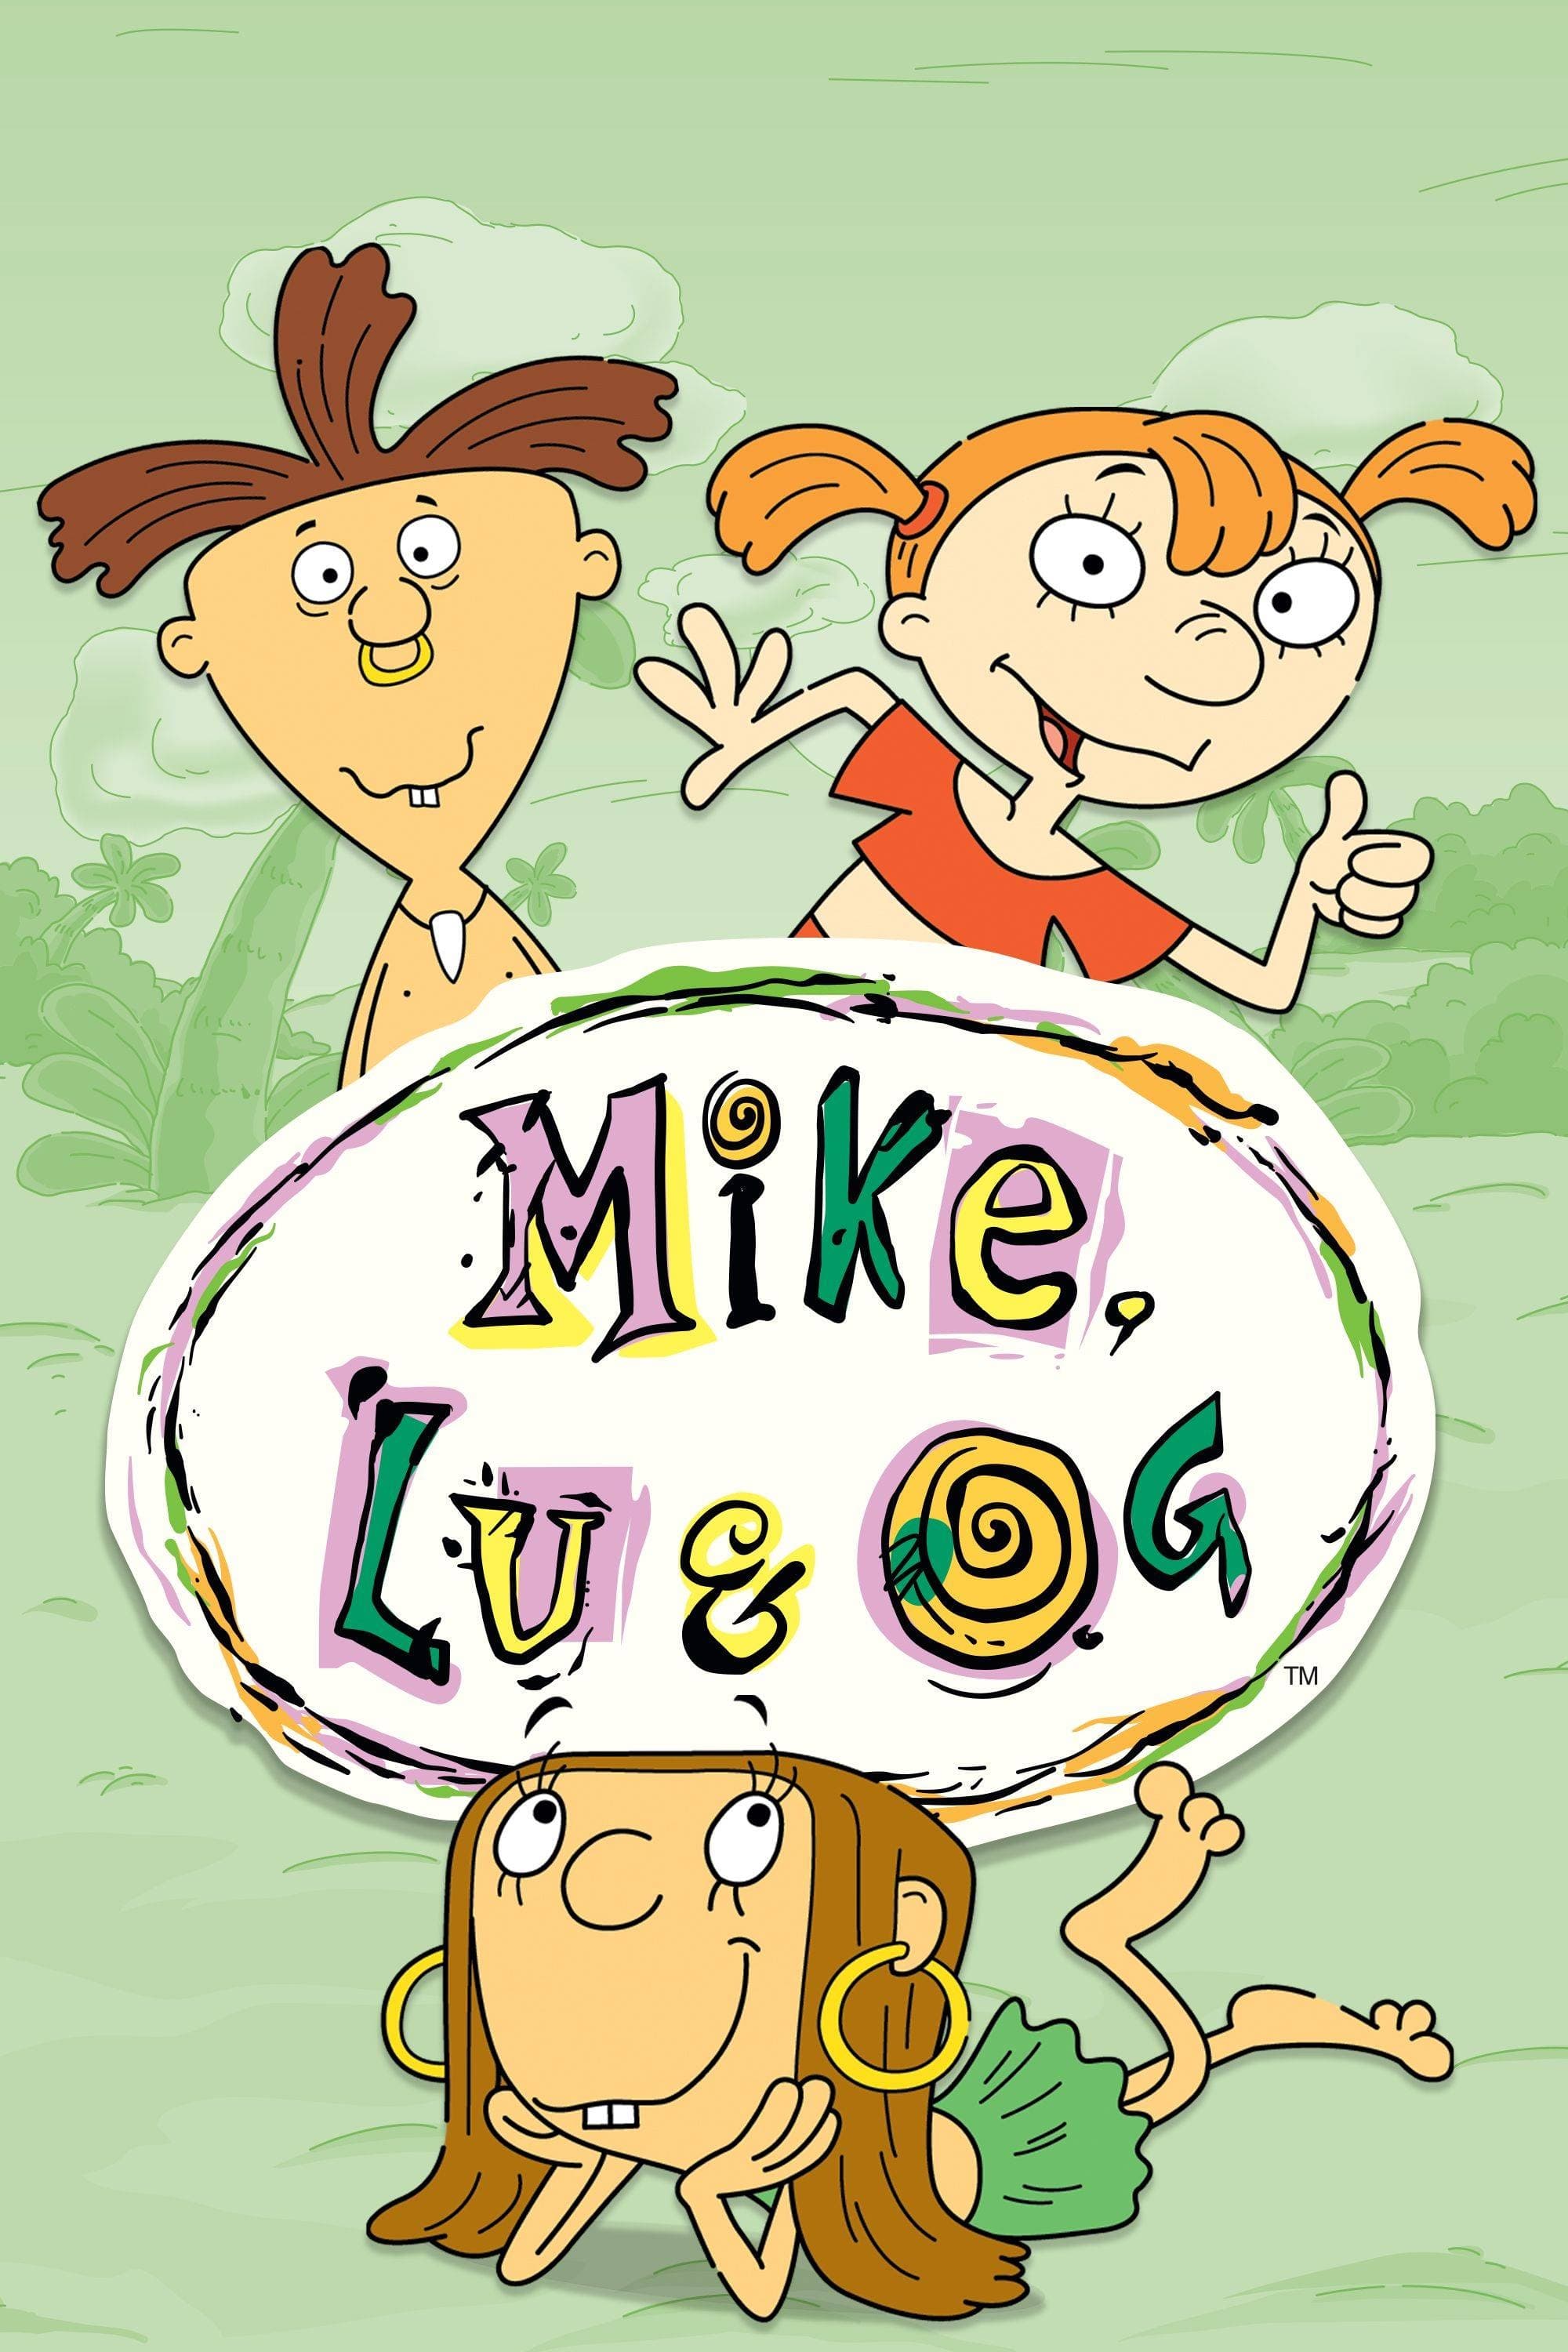 Mike, Lu et Og